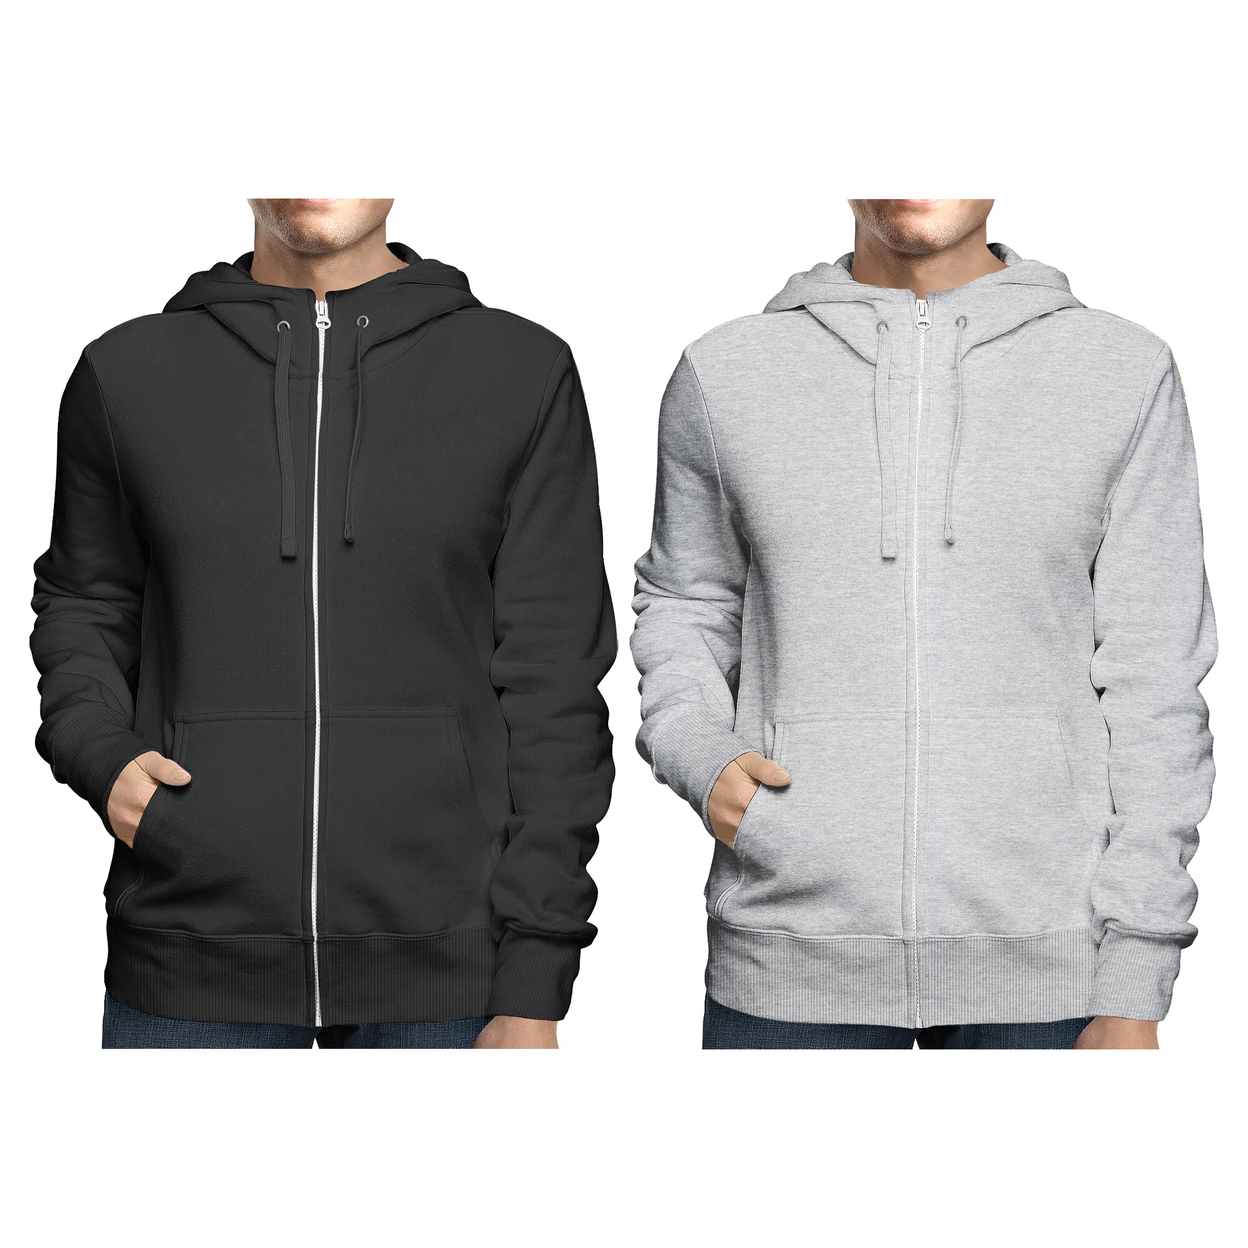 2-Pack: Men's Winter Warm Soft Full Zip-Up Fleece Lined Hoodie Sweatshirt - Black & Charcoal, Medium